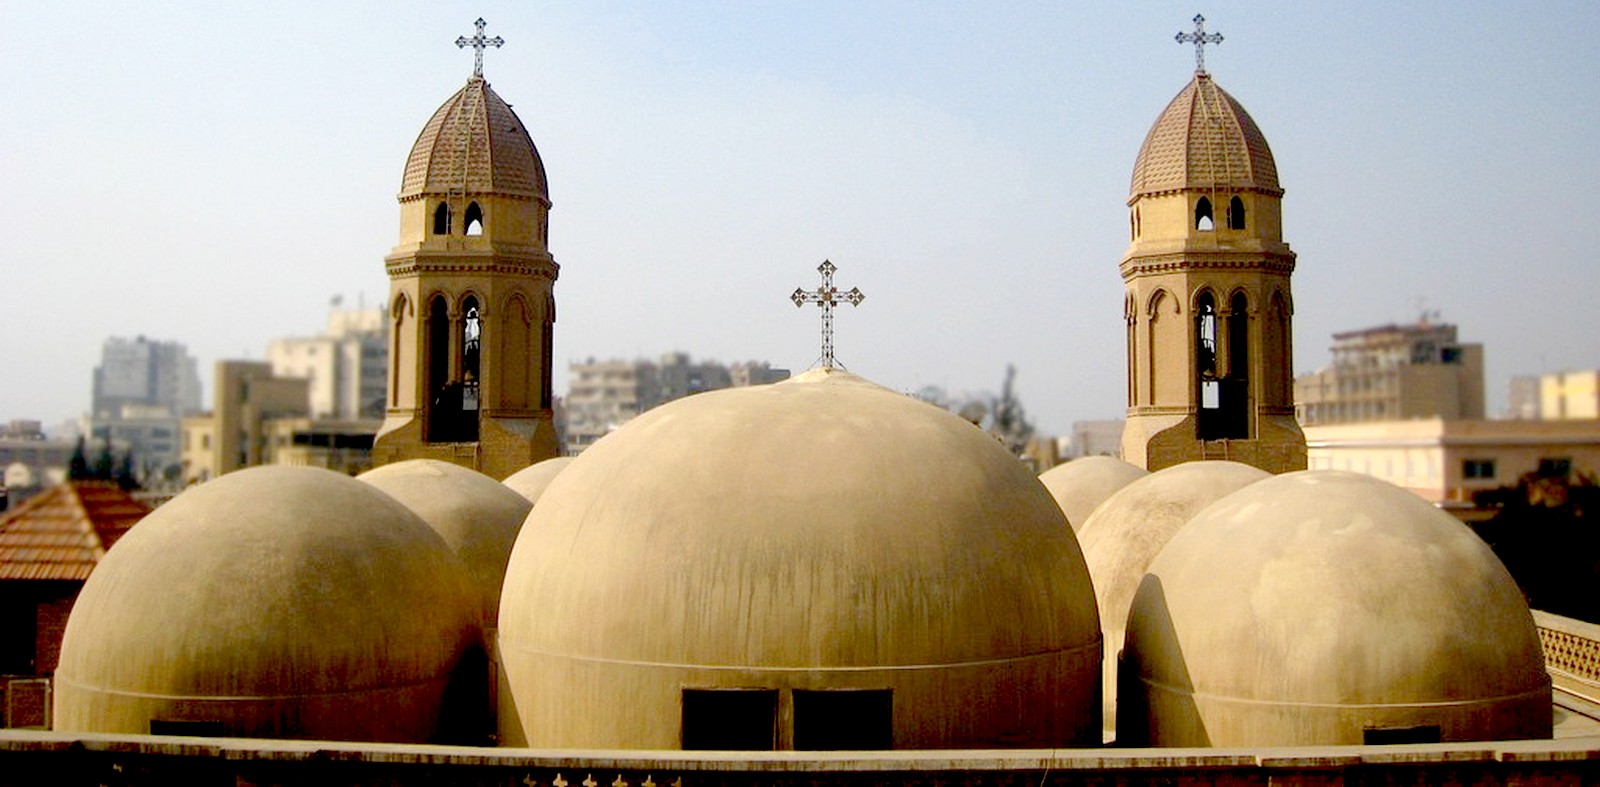 Nuestra Señora de Assiut, Apariciones que Vieron Miles por Días, Egipto (17 ago)